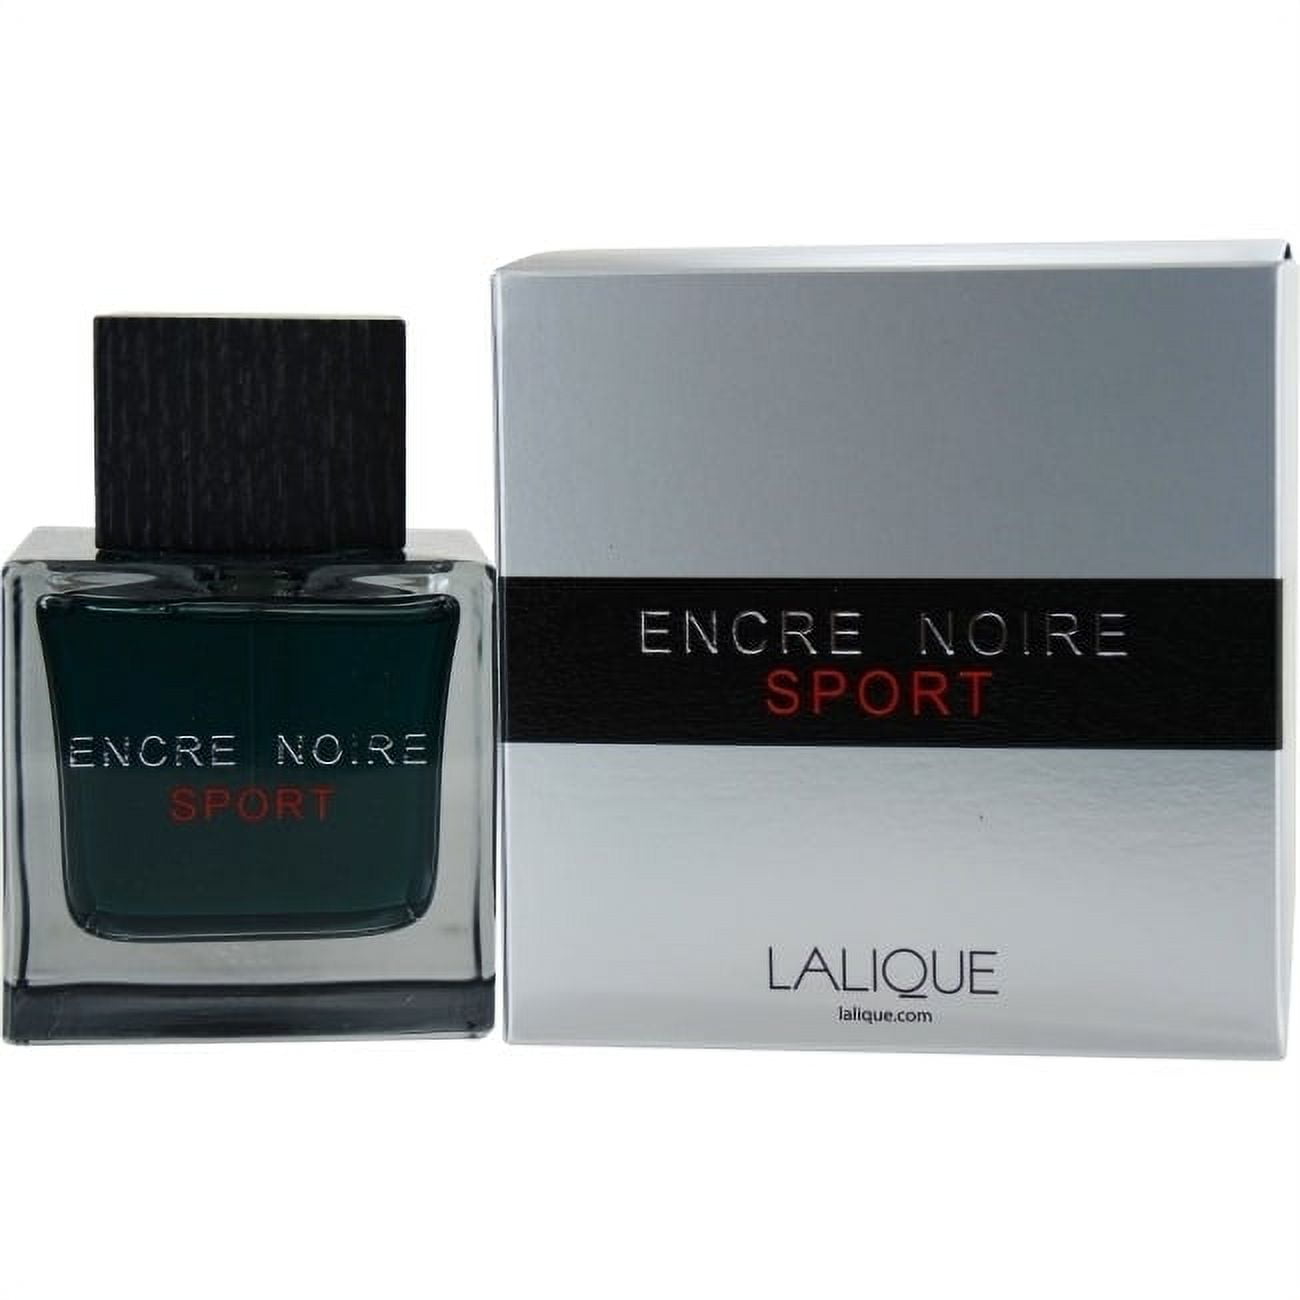 Lalique Encre Noire Eau de Toilette Spray - 3.3 fl oz bottle